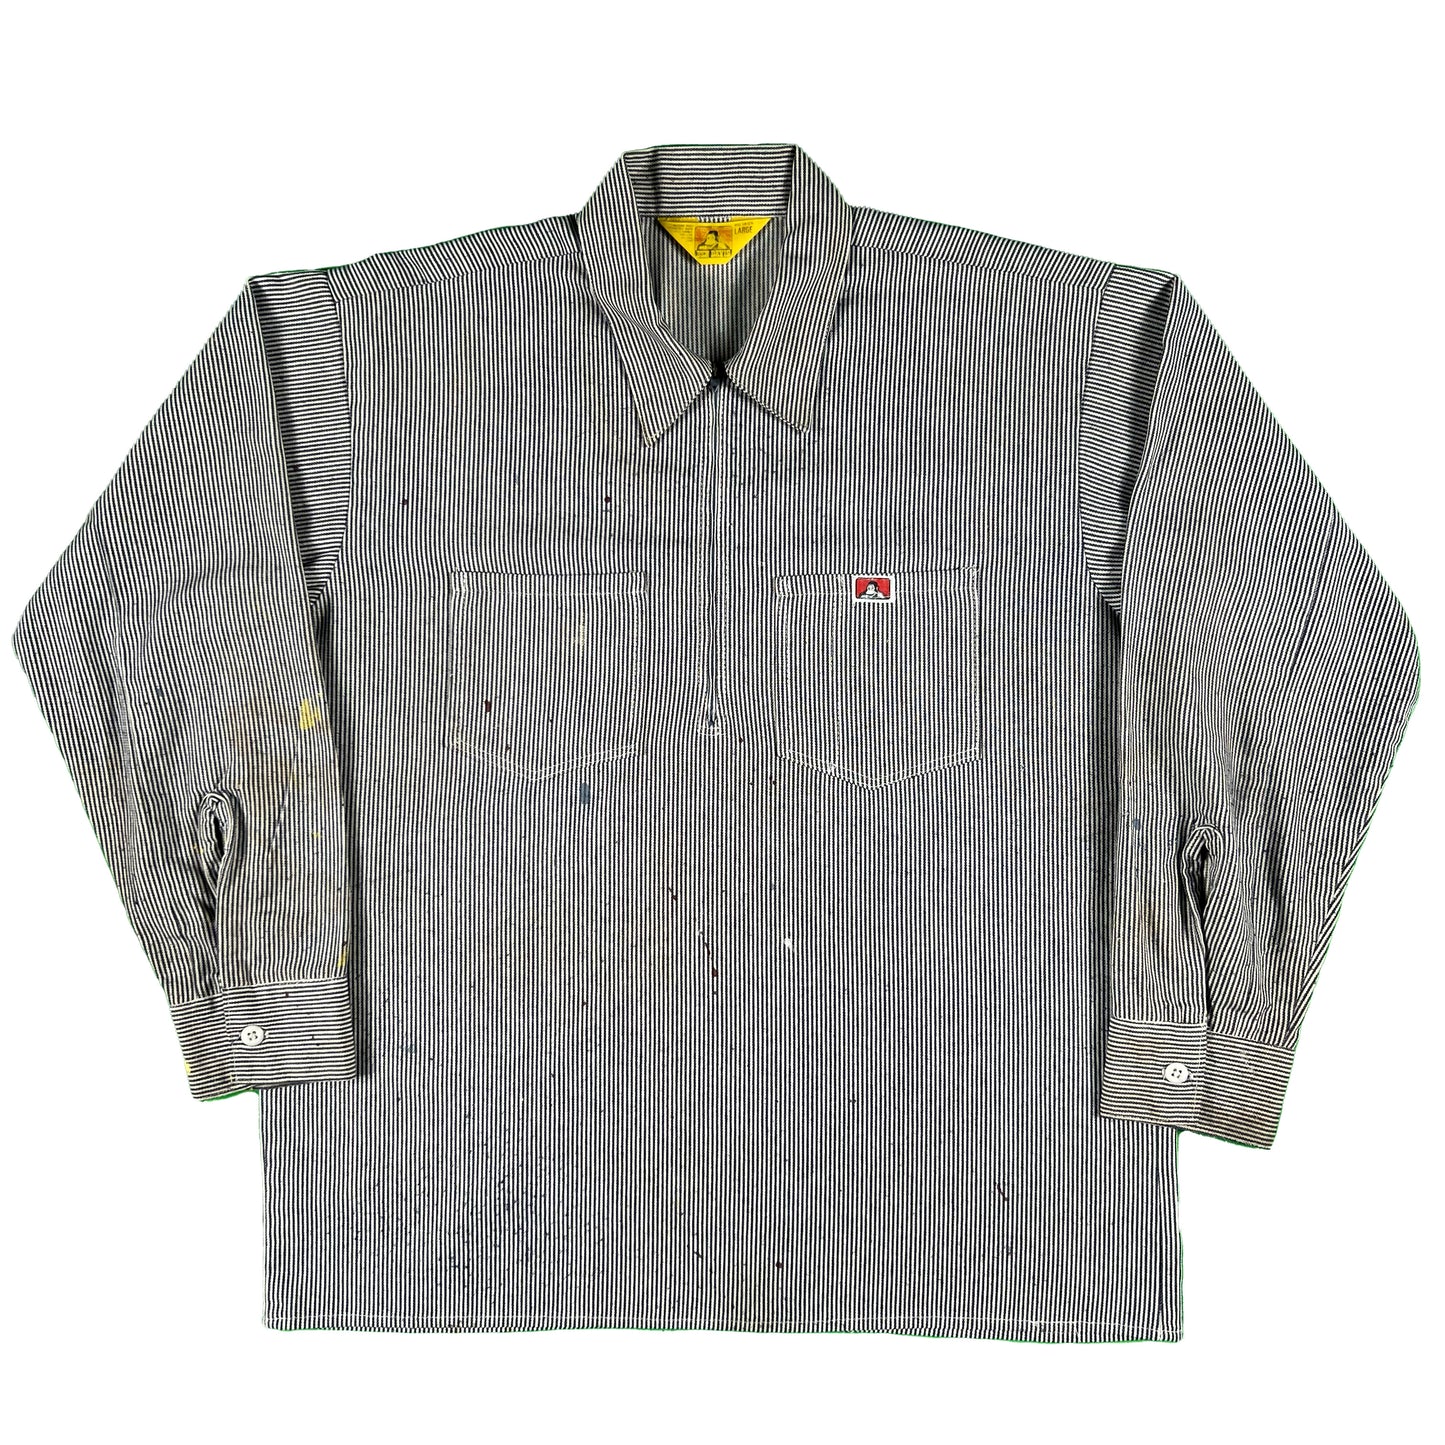 70s Ben Davis Hickory Striped Work Shirt- L